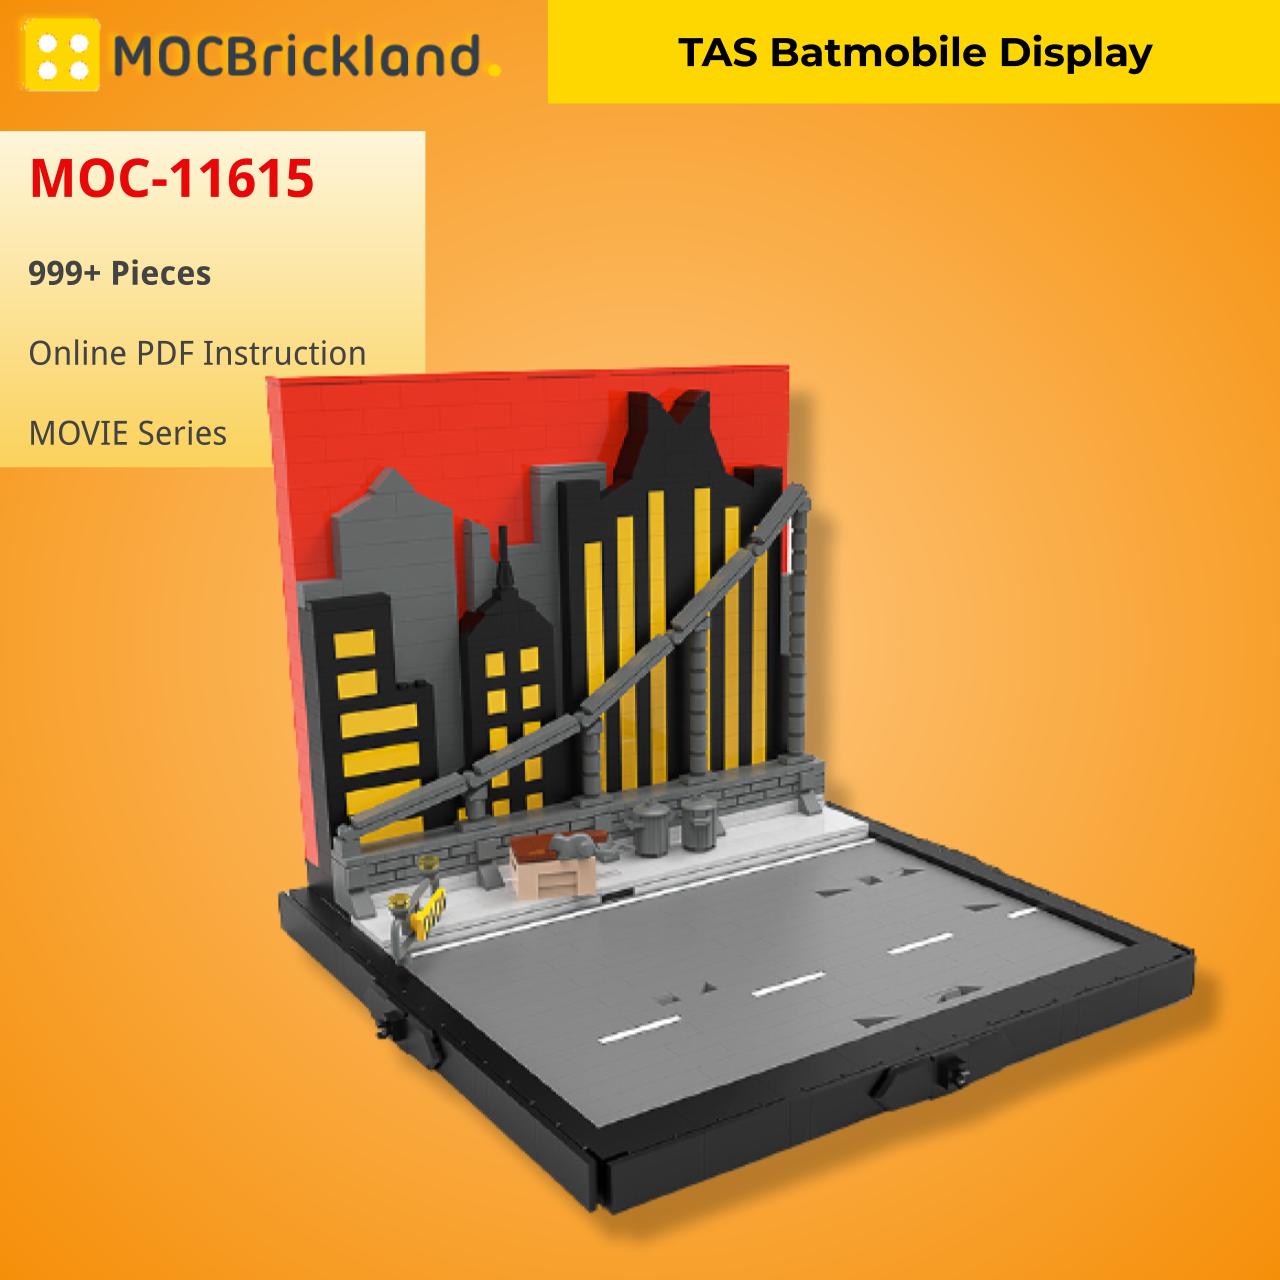 MOCBRICKLAND MOC-11615 TAS Batmobile Display